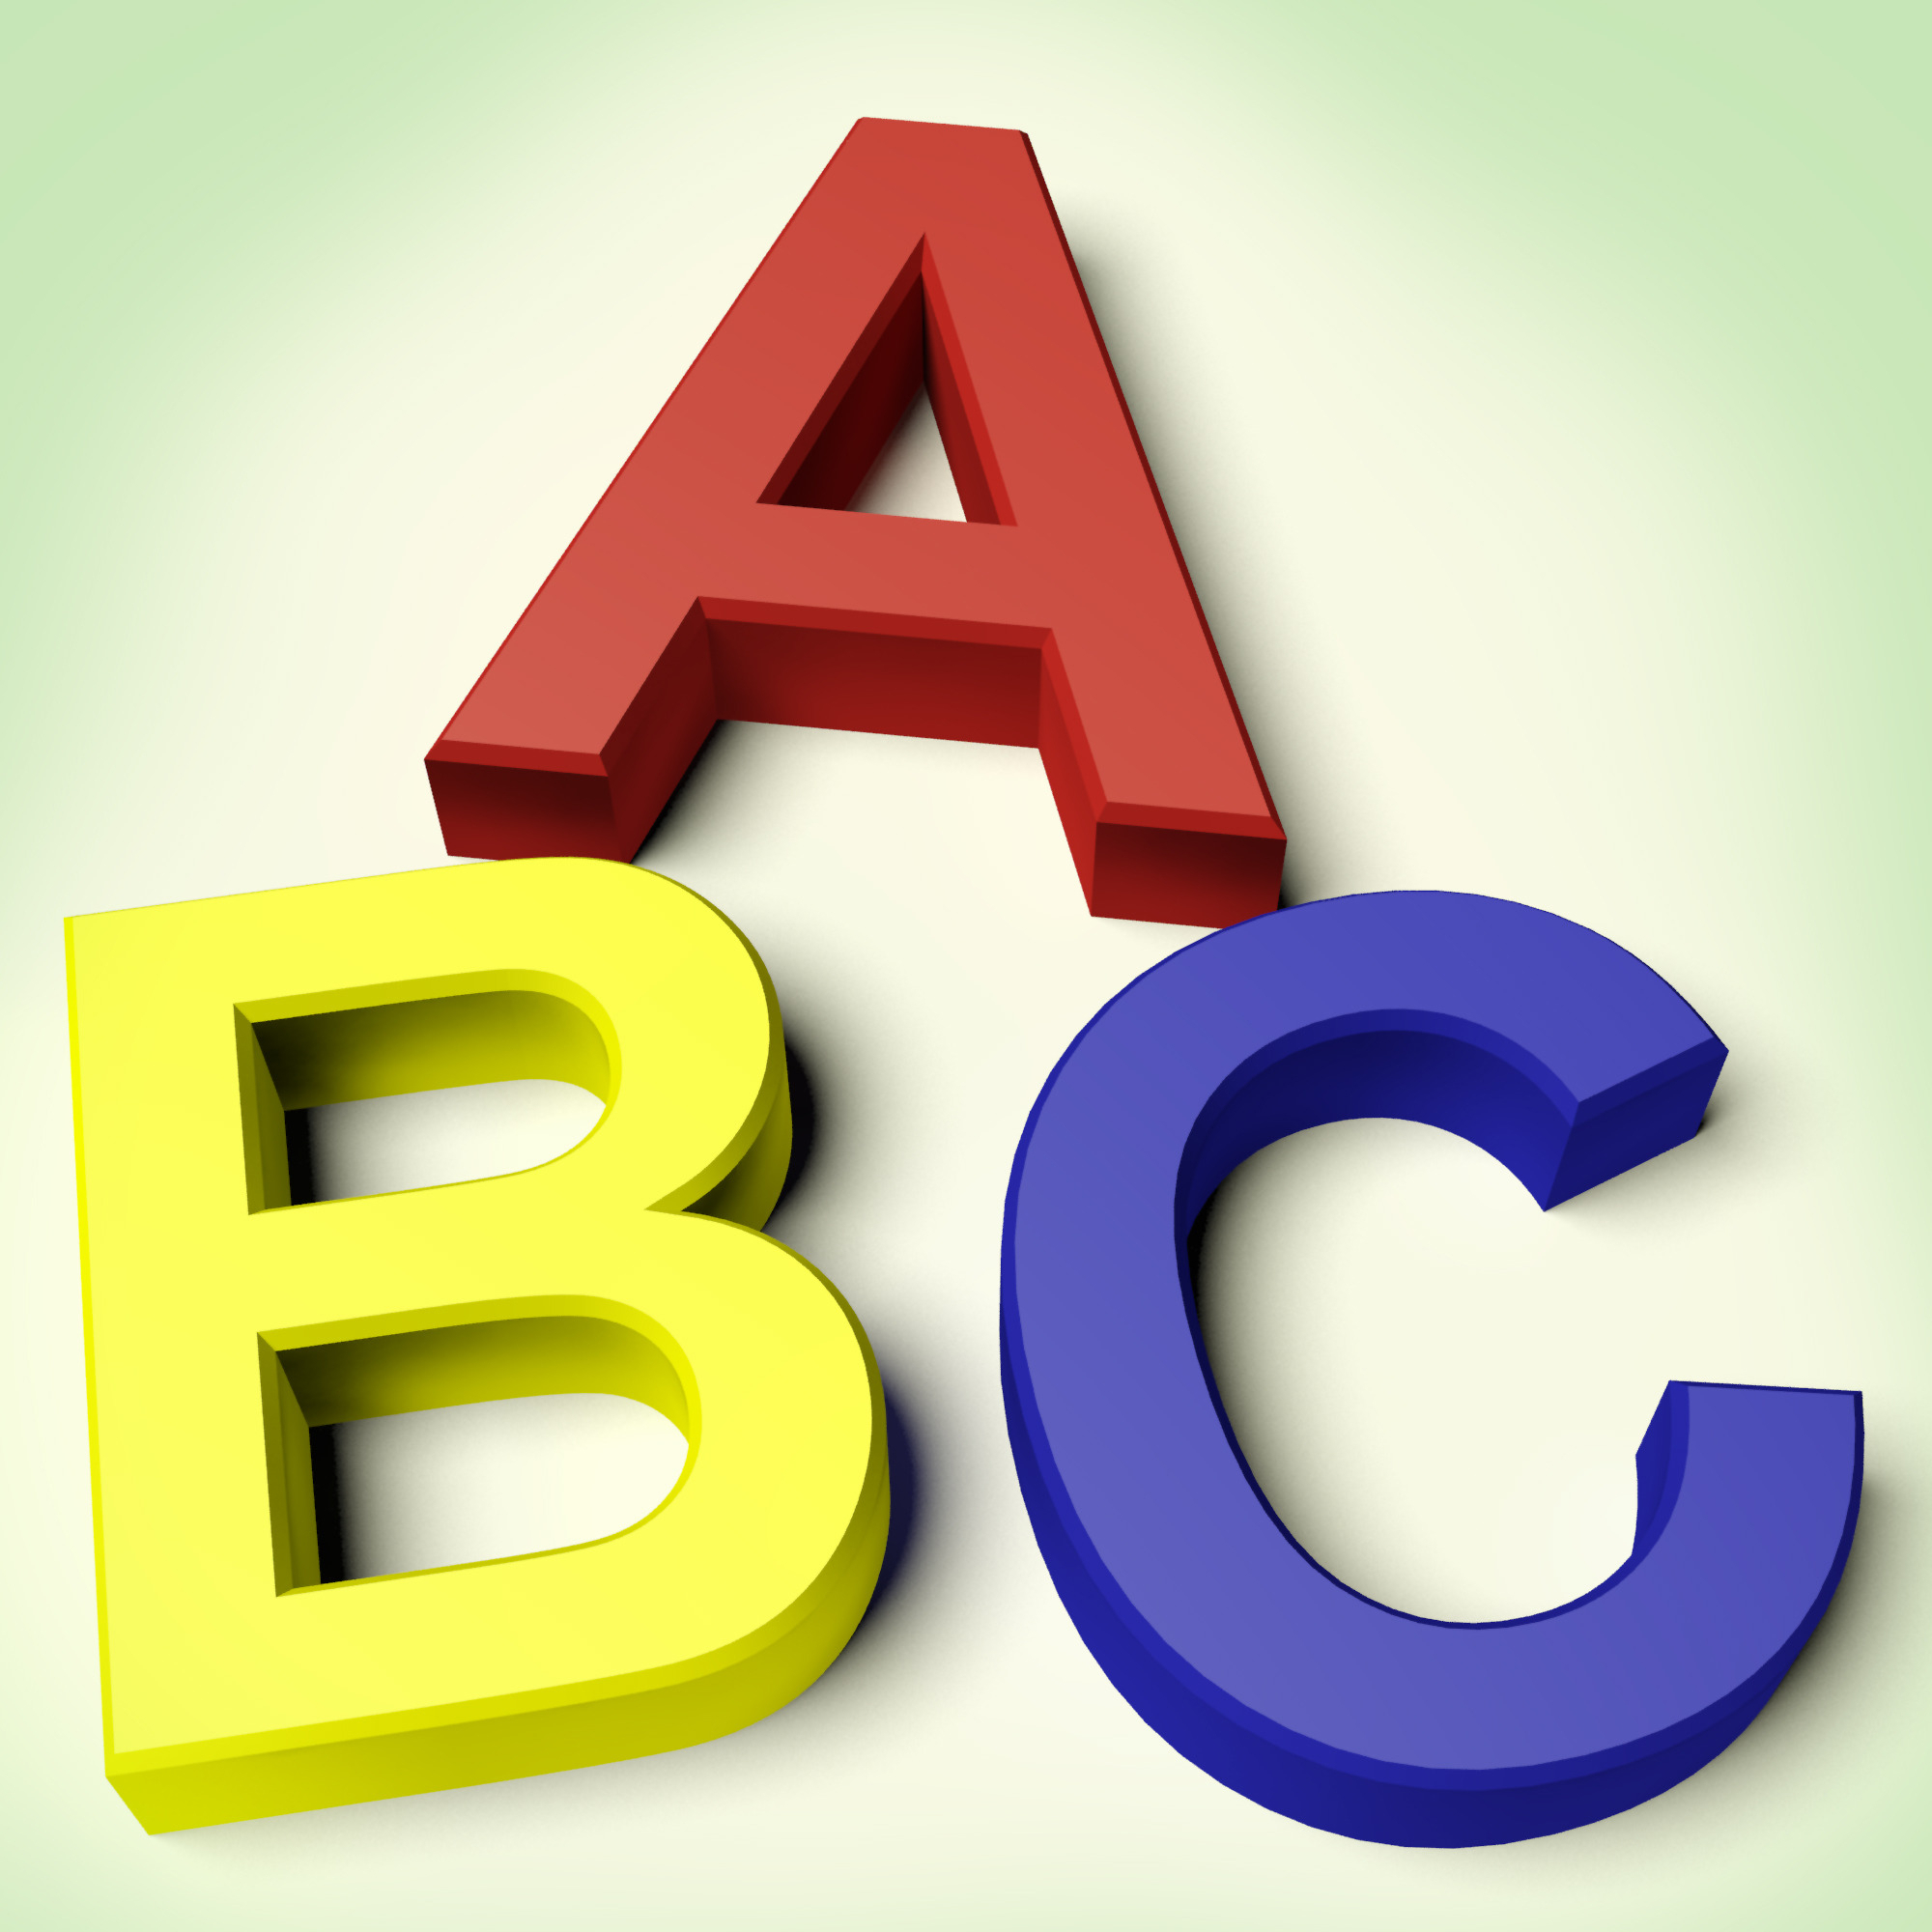 The ABC’s of Behavior